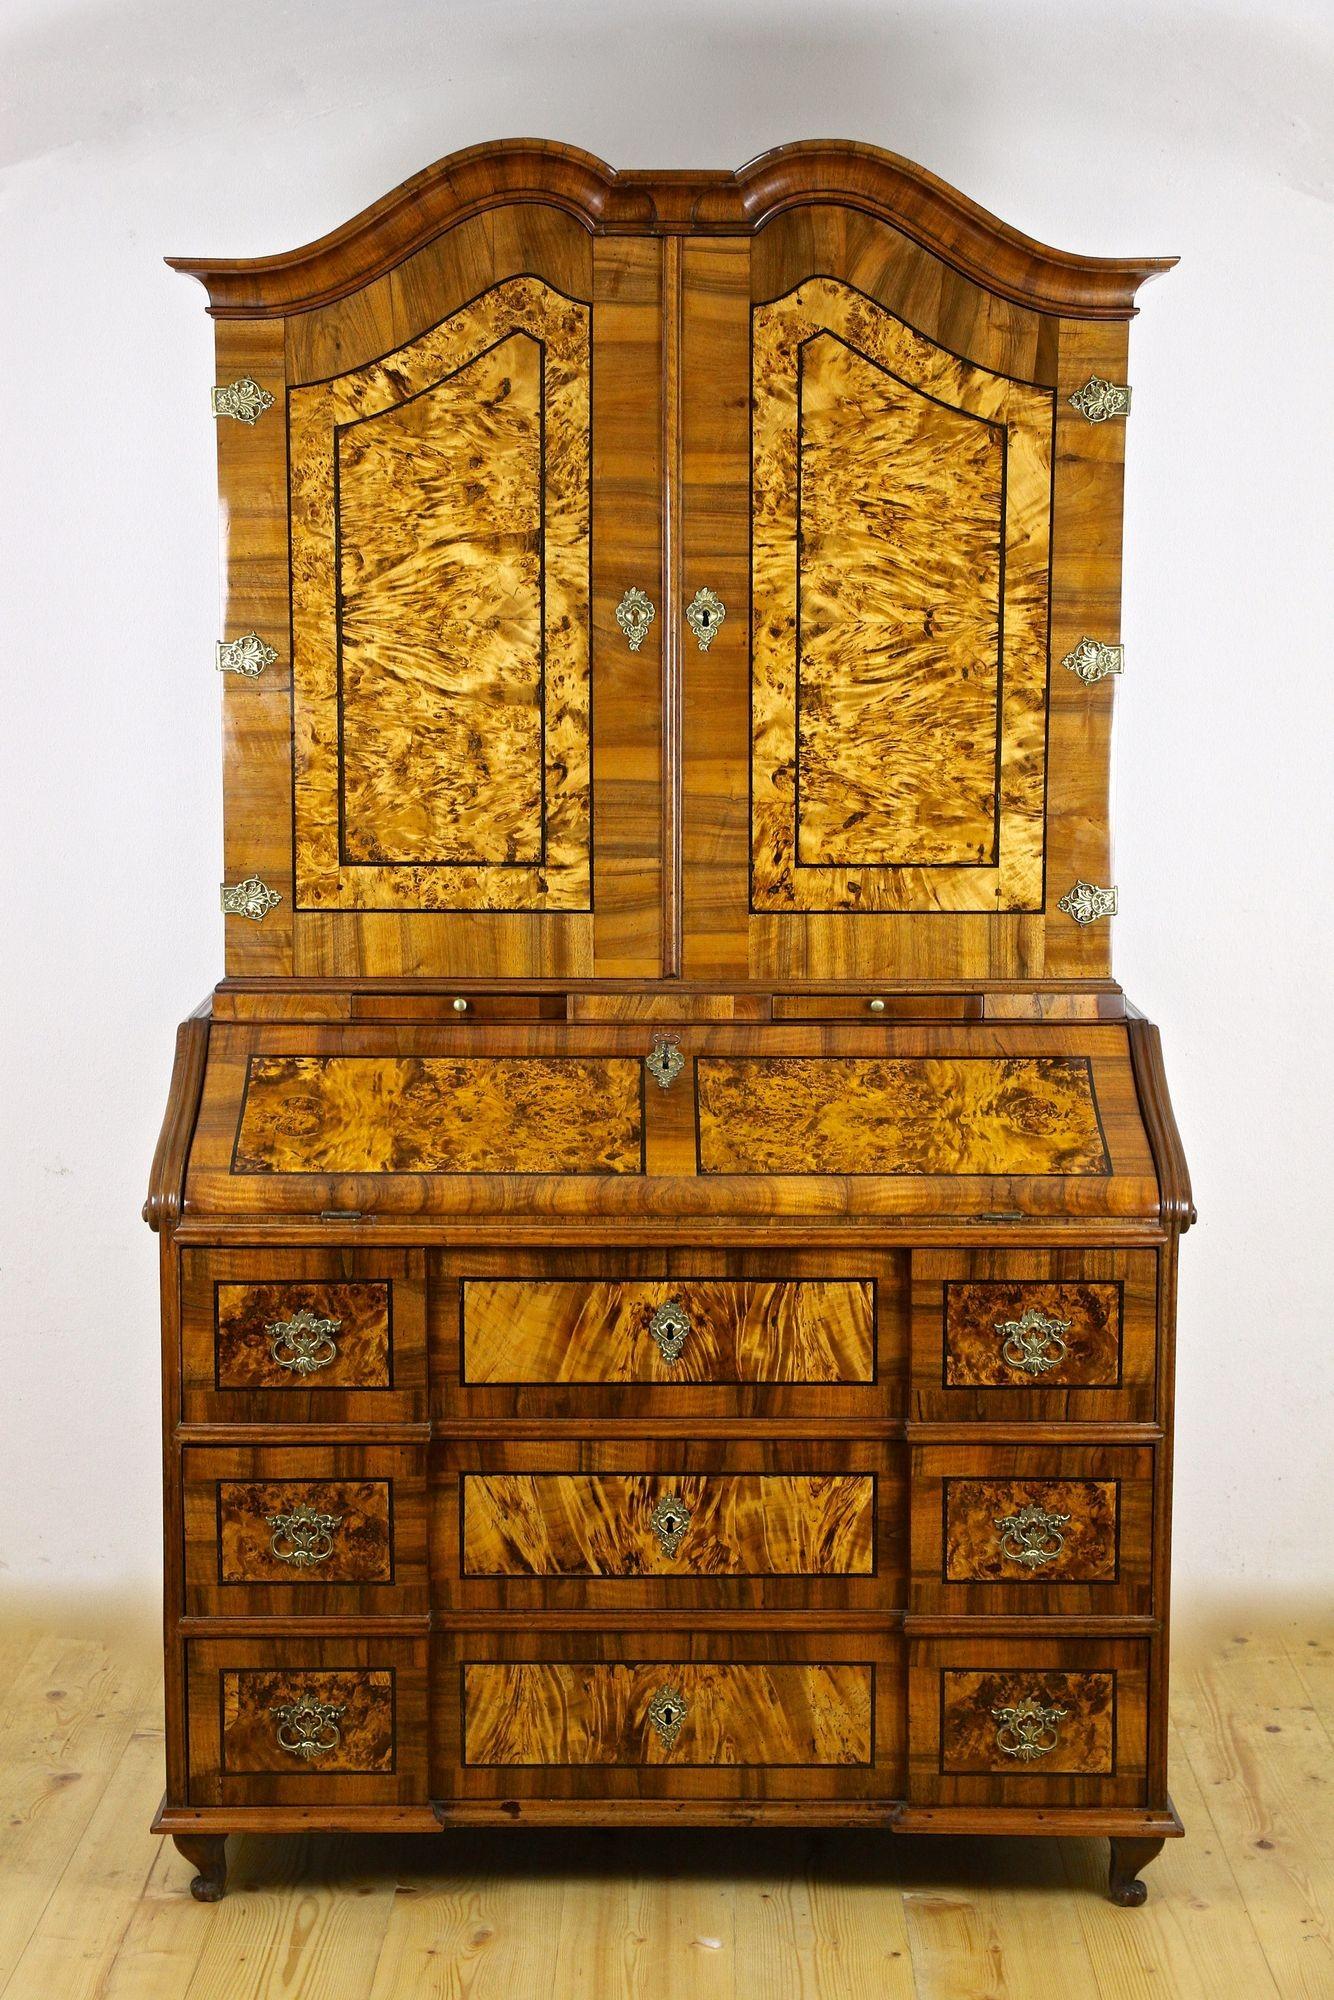 Bedeutender Sekretär oder Schreibschrank aus dem 18. Jahrhundert, der um 1770 in Westdeutschland aufwändig im Barock gefertigt wurde. Verschiedene Arten von feinem Nussbaumholz wurden verwendet, um ein einzigartiges Design zu schaffen. Fantastisch